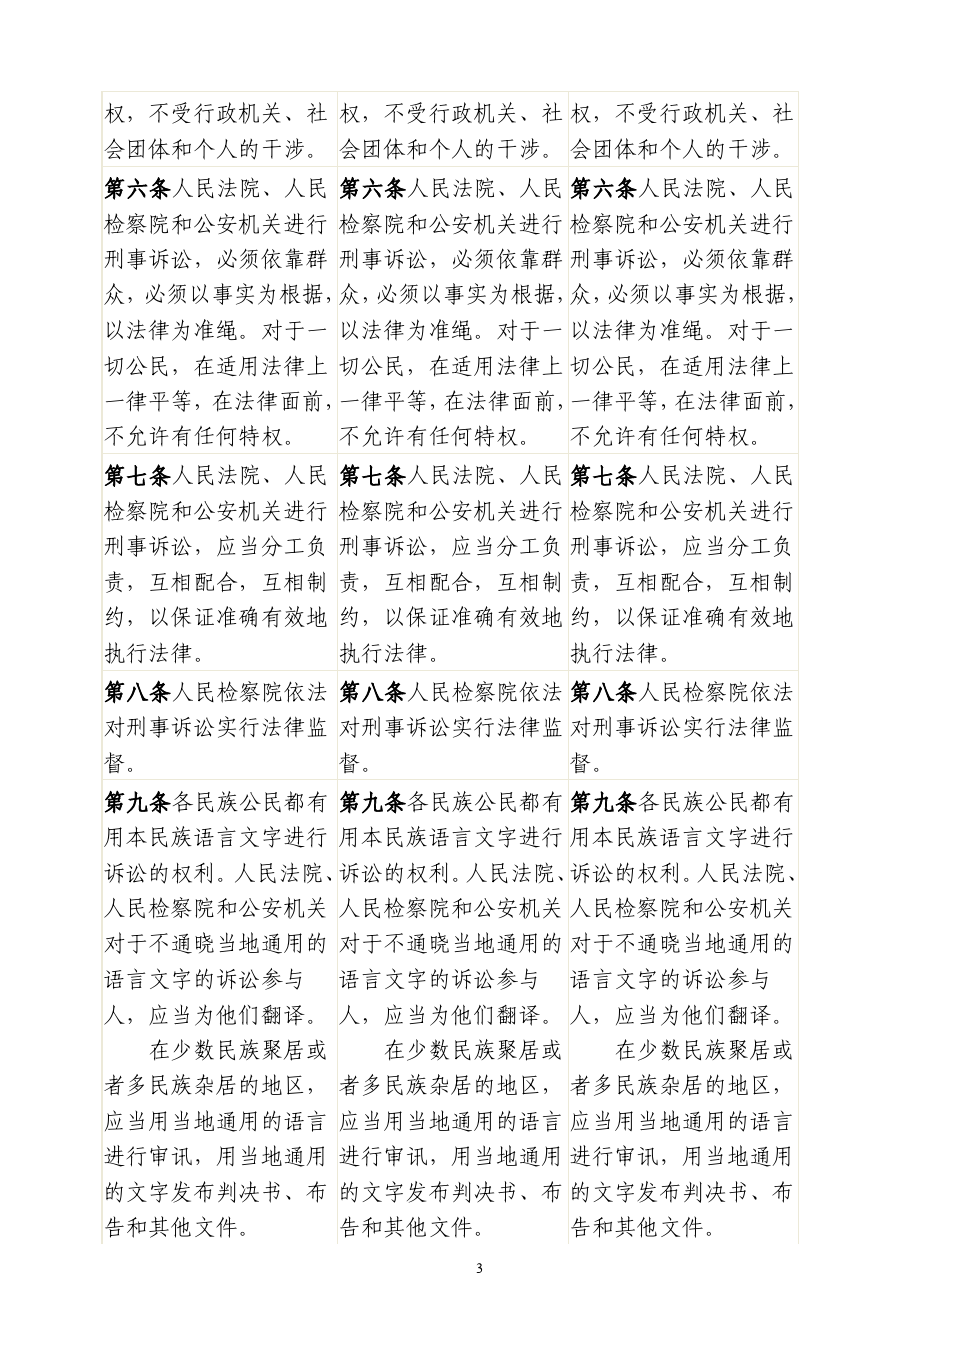 中华人民共和国刑事诉讼法对照表完全版